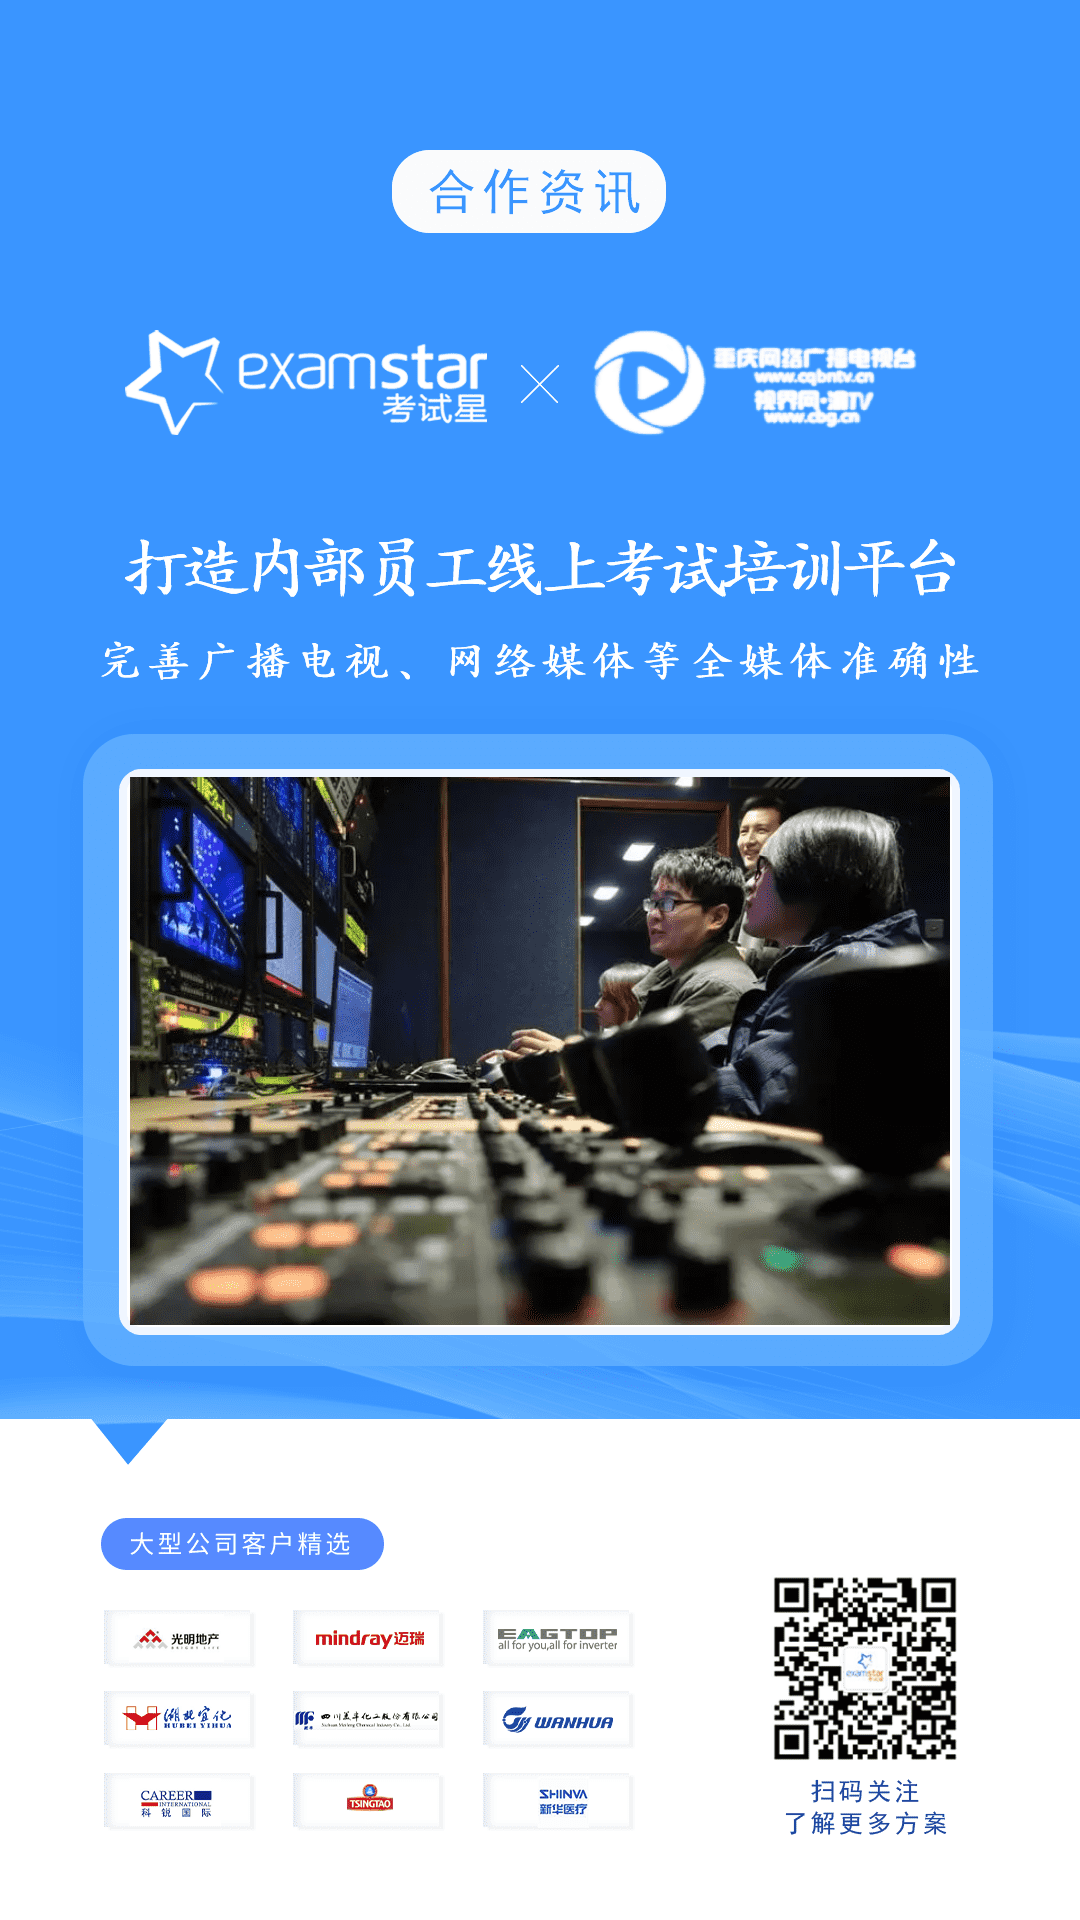 重庆网络广播电视台-考试星员工线上考试培训平台